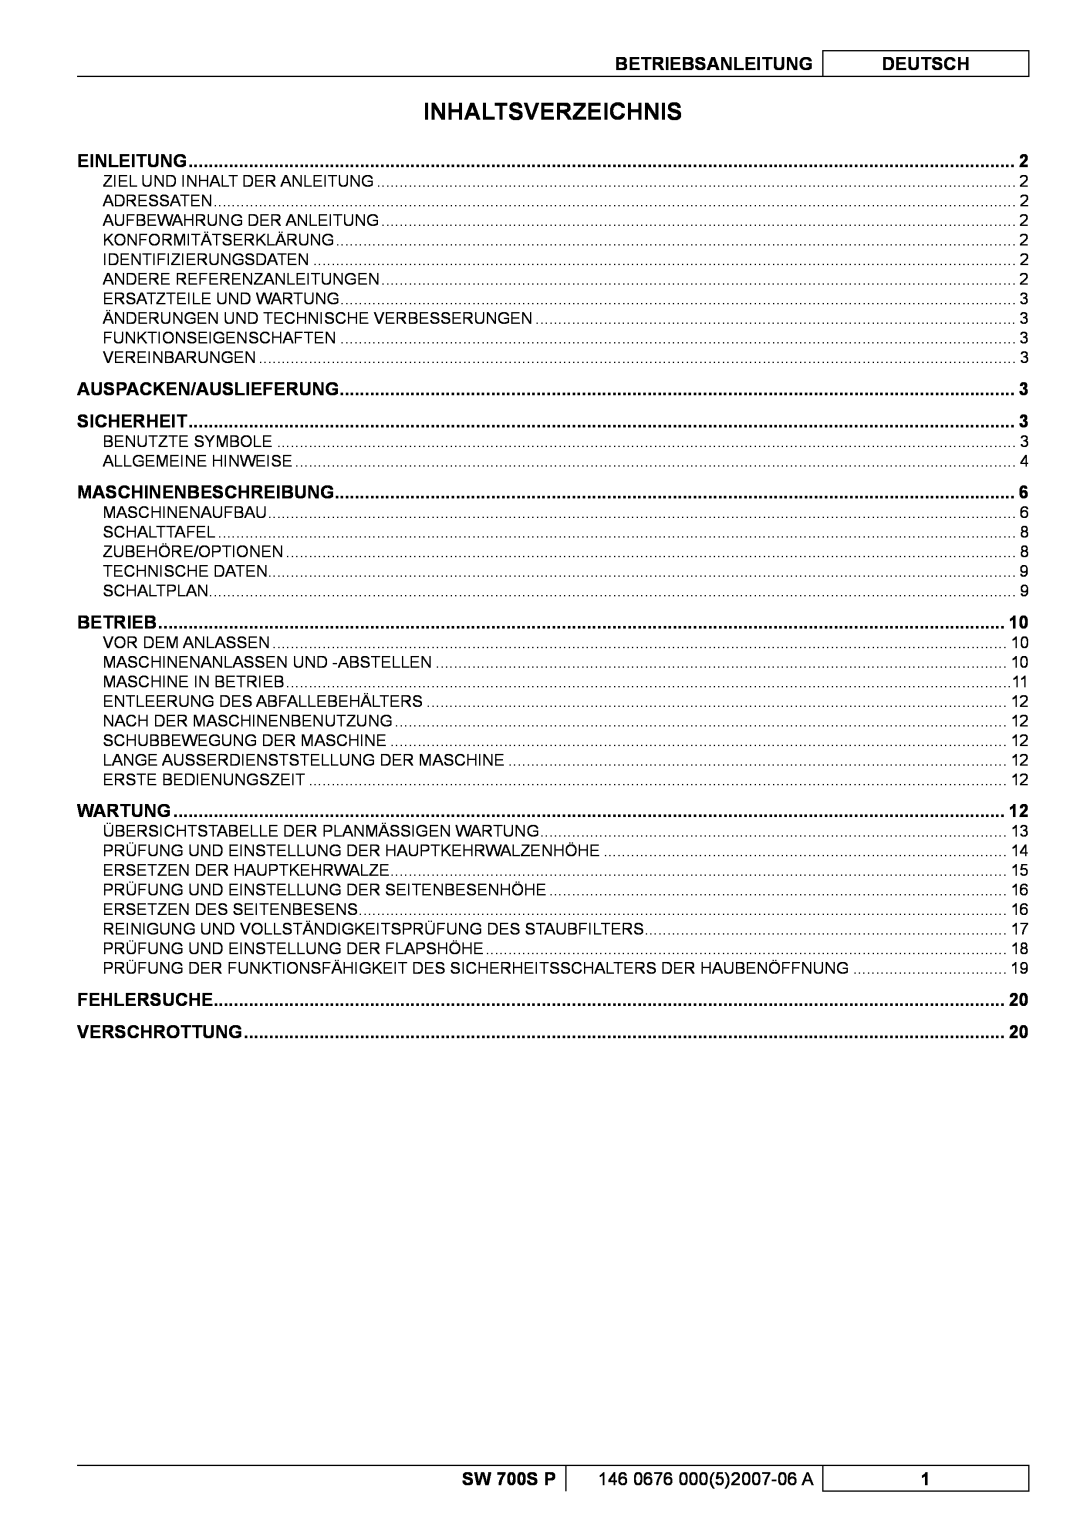 Nilfisk-Advance America SW 700S P manuel dutilisation Inhaltsverzeichnis, Betriebsanleitung, Deutsch 